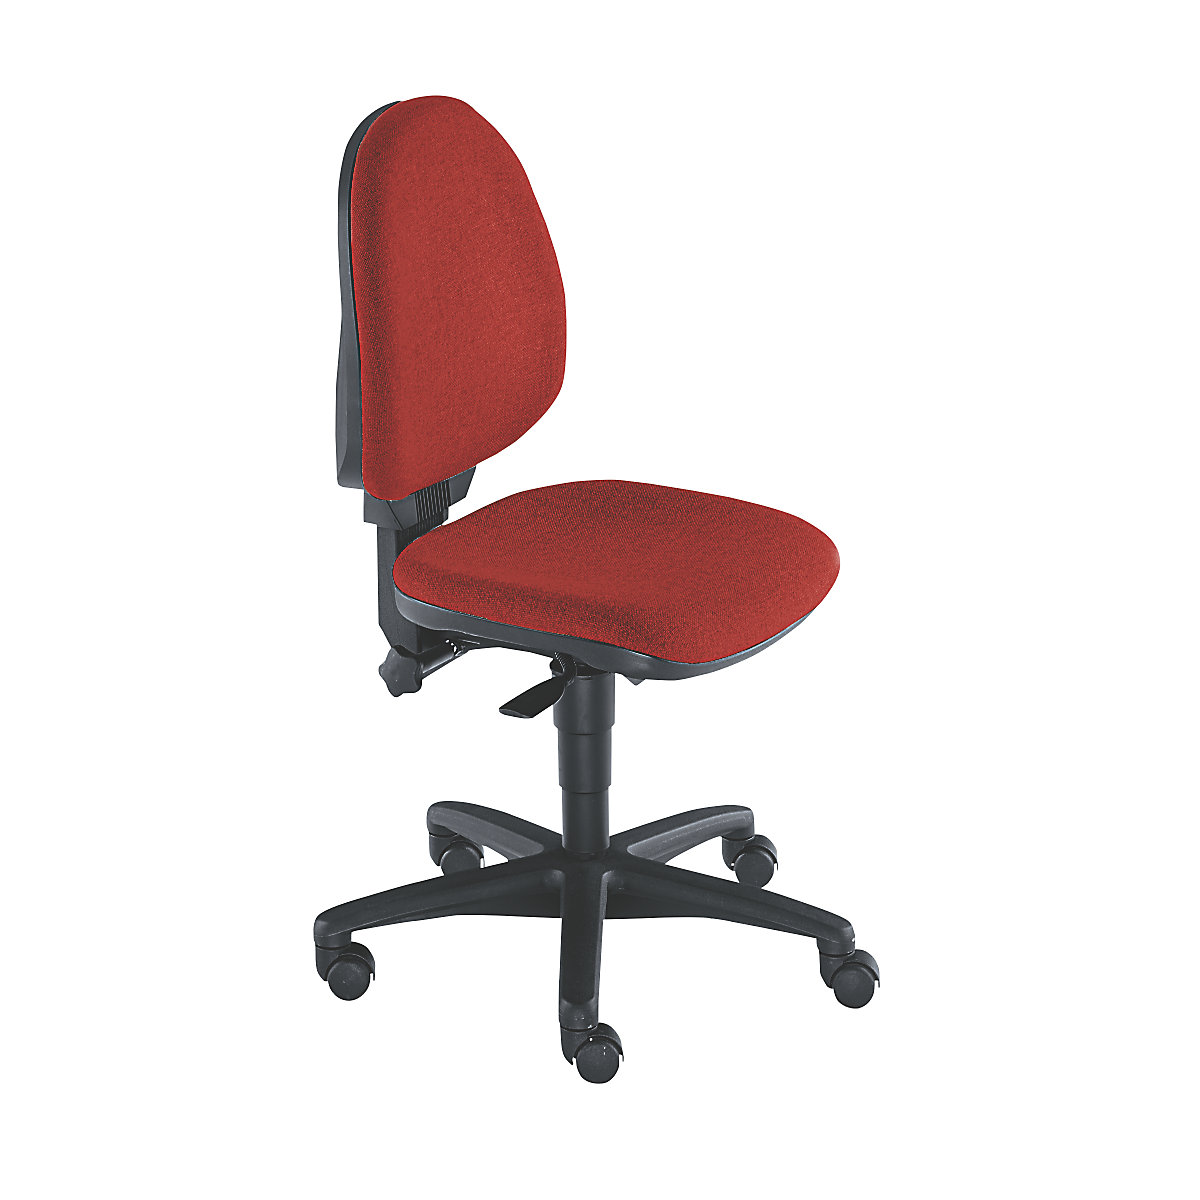 Cadeira giratória standard – Topstar, sem apoios para braços, encosto de 450 mm, tecido vermelho, armação preta-4